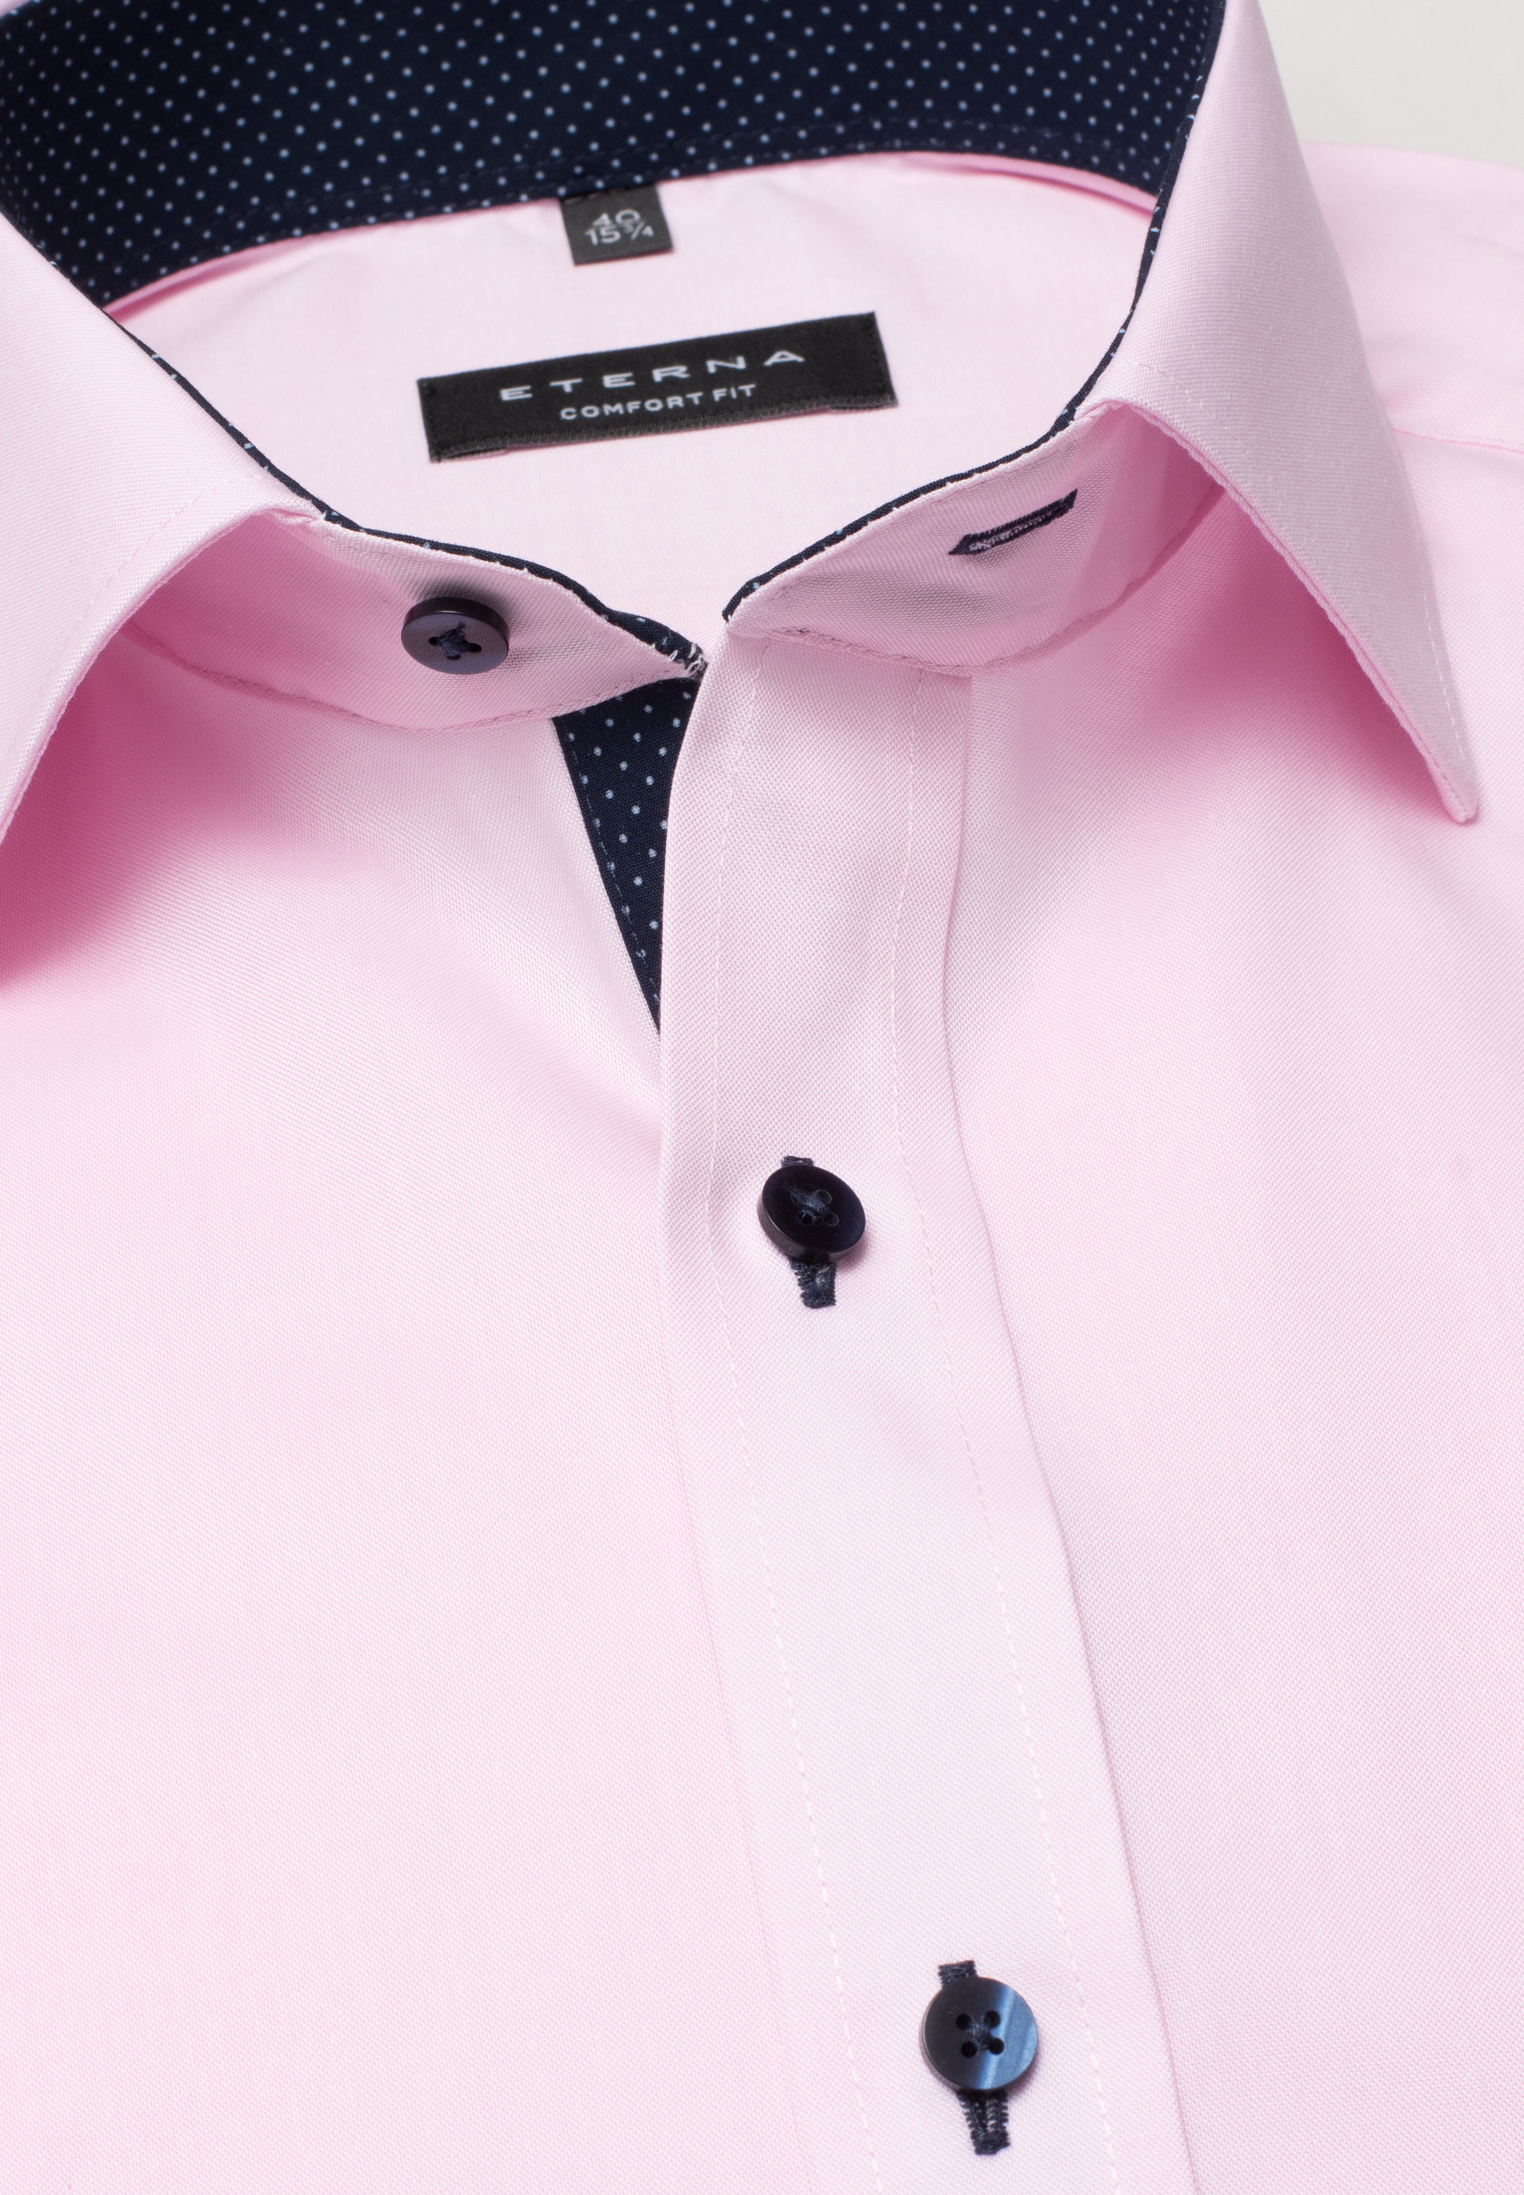 COMFORT FIT Hemd in rosa unifarben | rosa | 45 | Langarm |  1SH04620-15-11-45-1/1